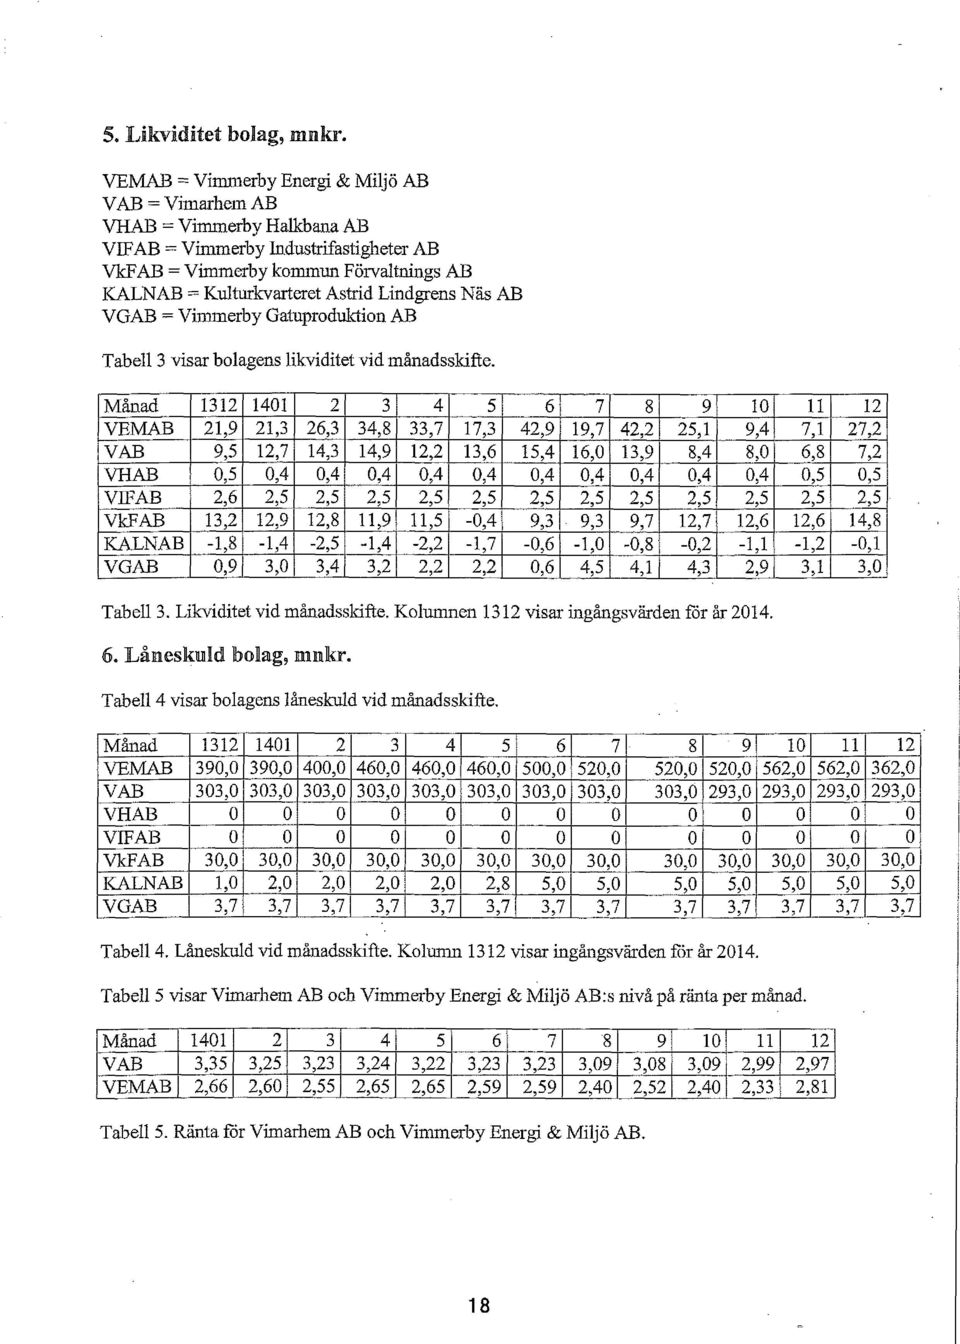 Lindgrens Näs AB VGAB =Vimmerby Gamproduktion AB Tabell 3 visar bolagens likviditet vid månadsskifte.